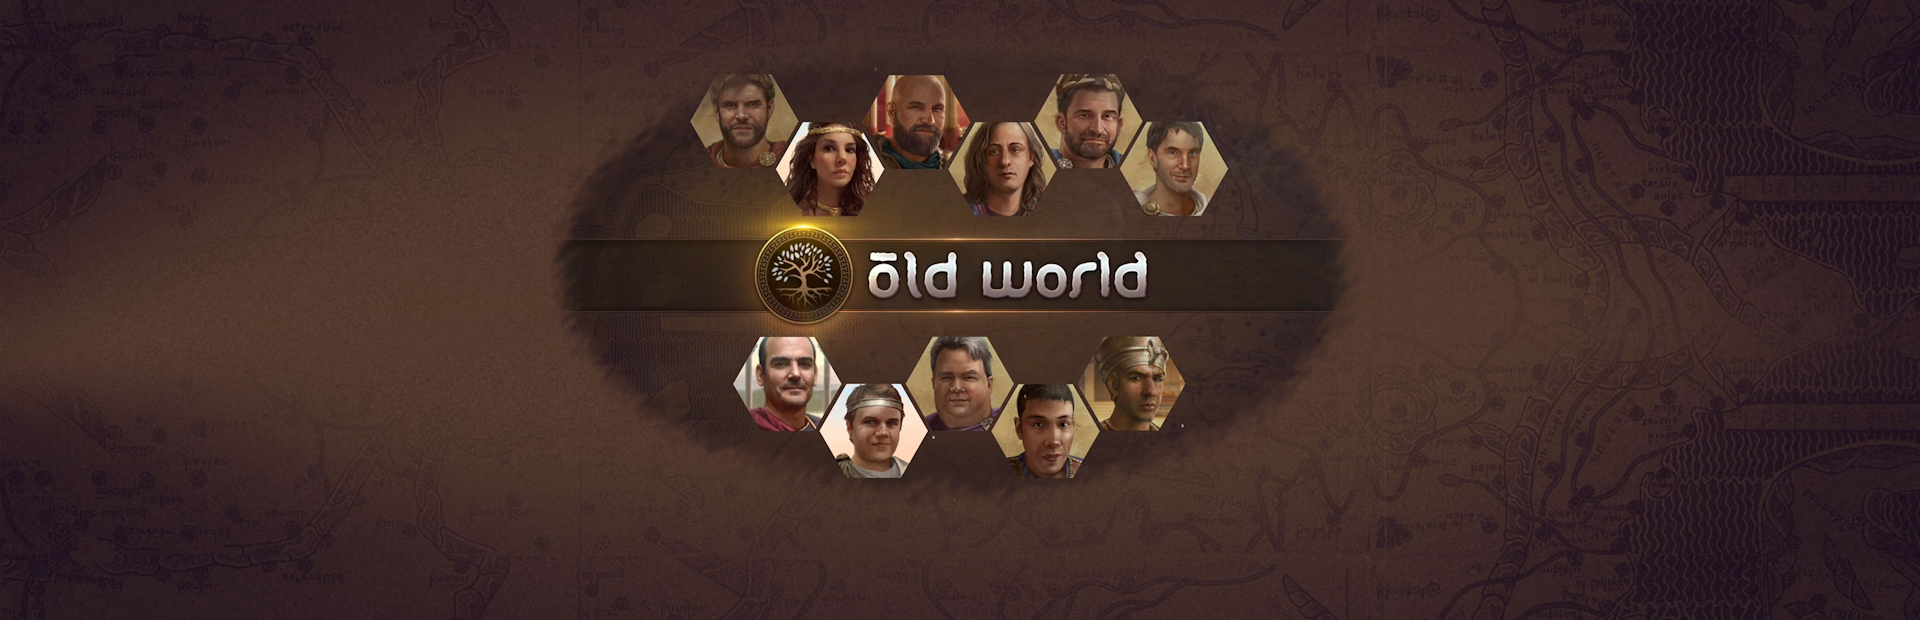 دانلود بازی Old World برای پی سی | گیمباتو